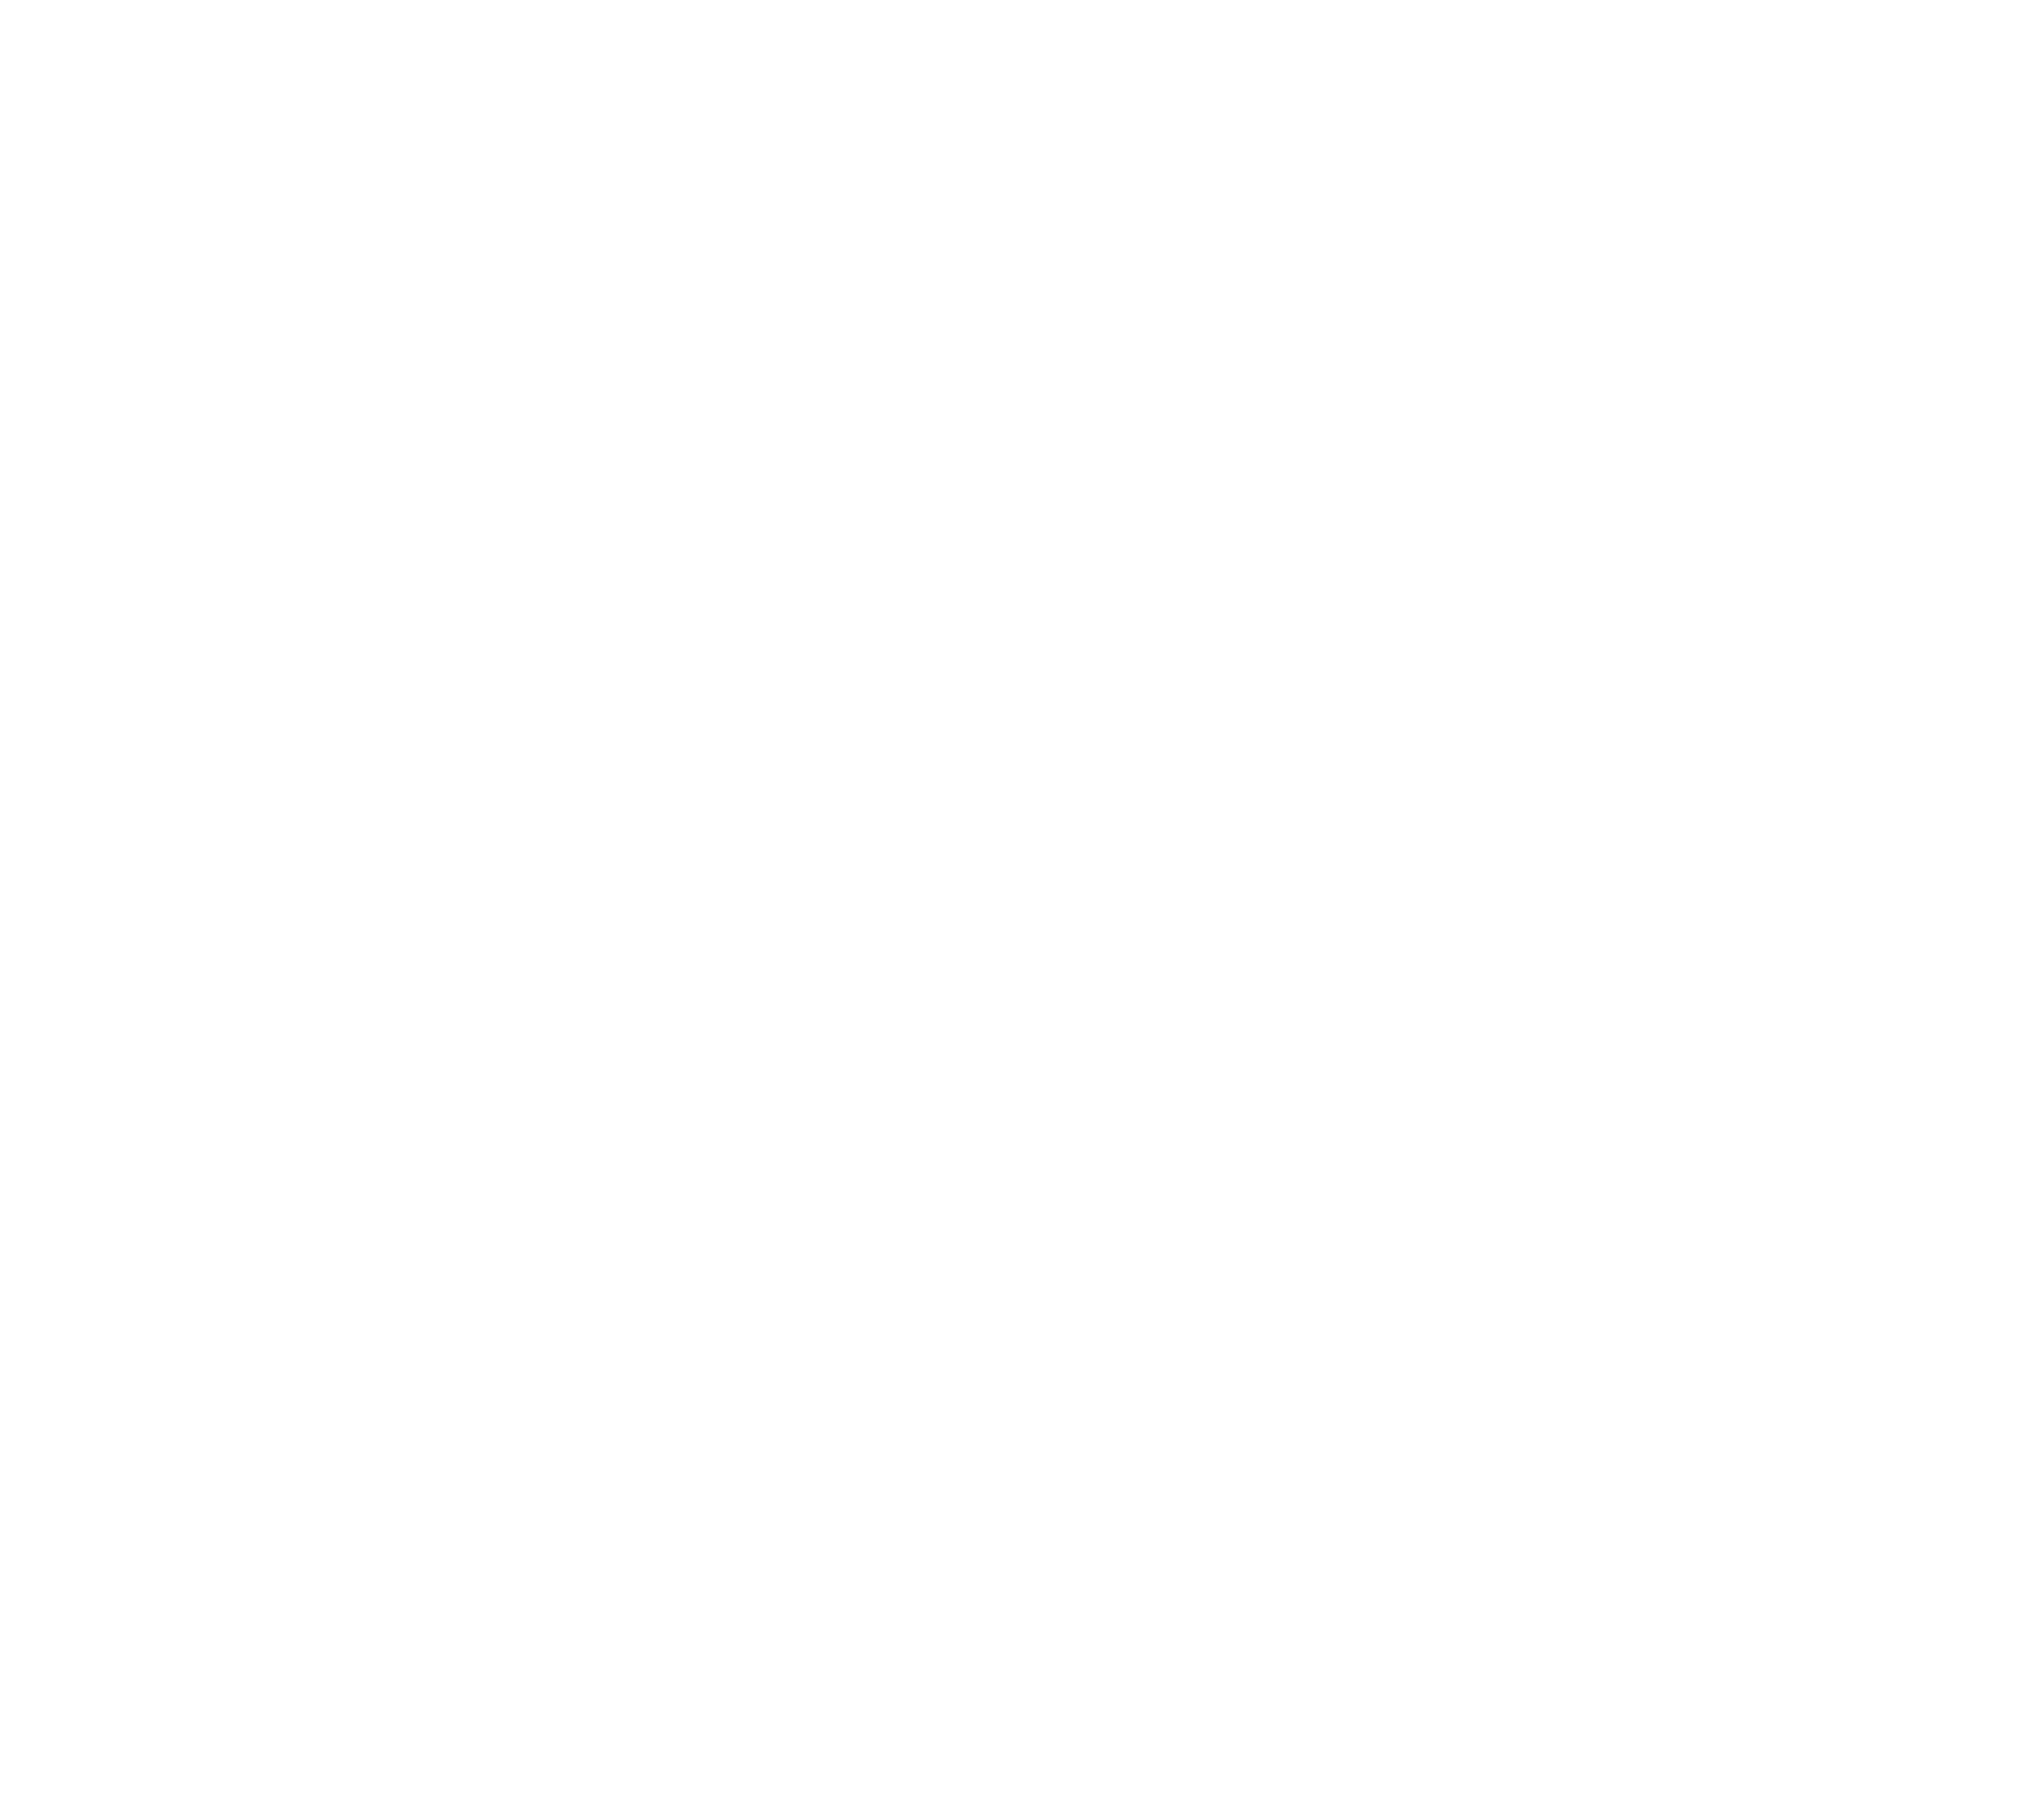 Renovate-FINAL-Logos-5.4_-R-White